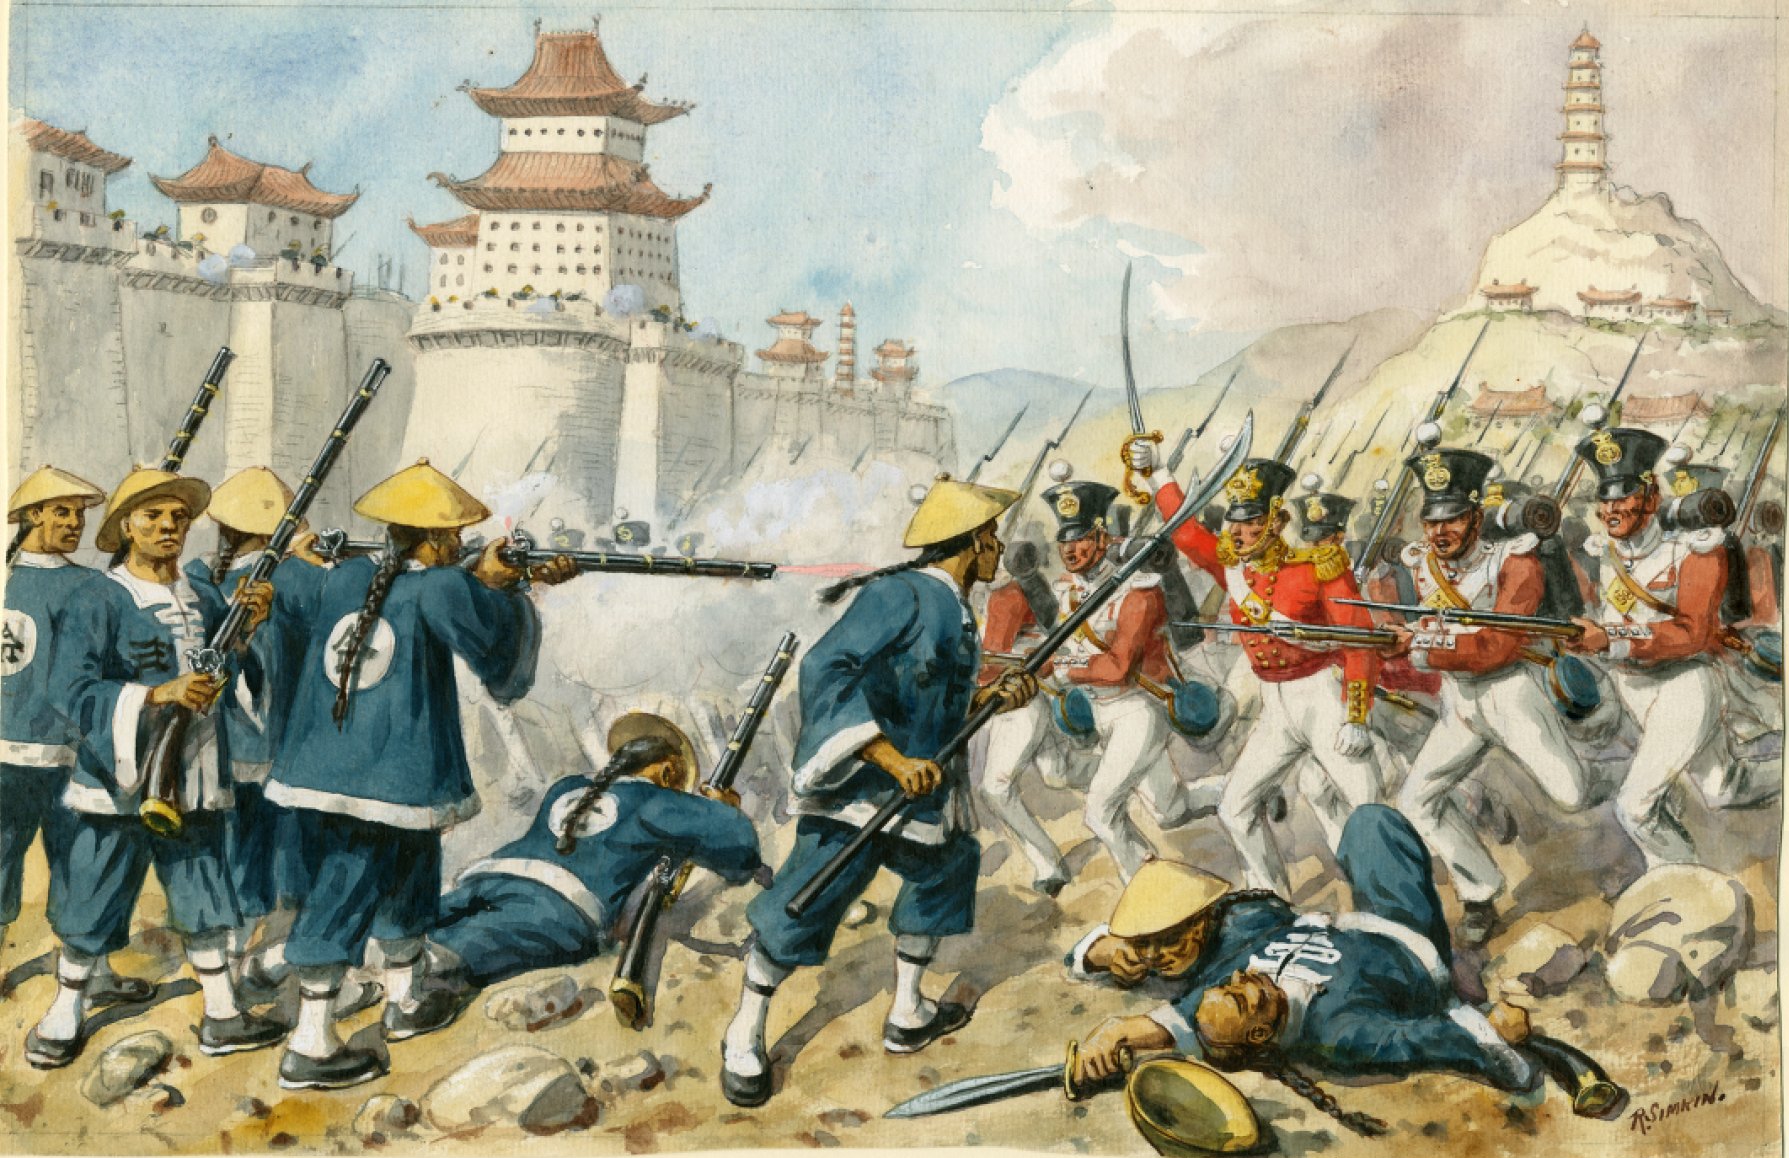 Mançu hükümetinin yenilgisiyle sonuçlanan Chin-Kiang-Foo (Zhenjiang) saldırısında 98. Piyade Alayı